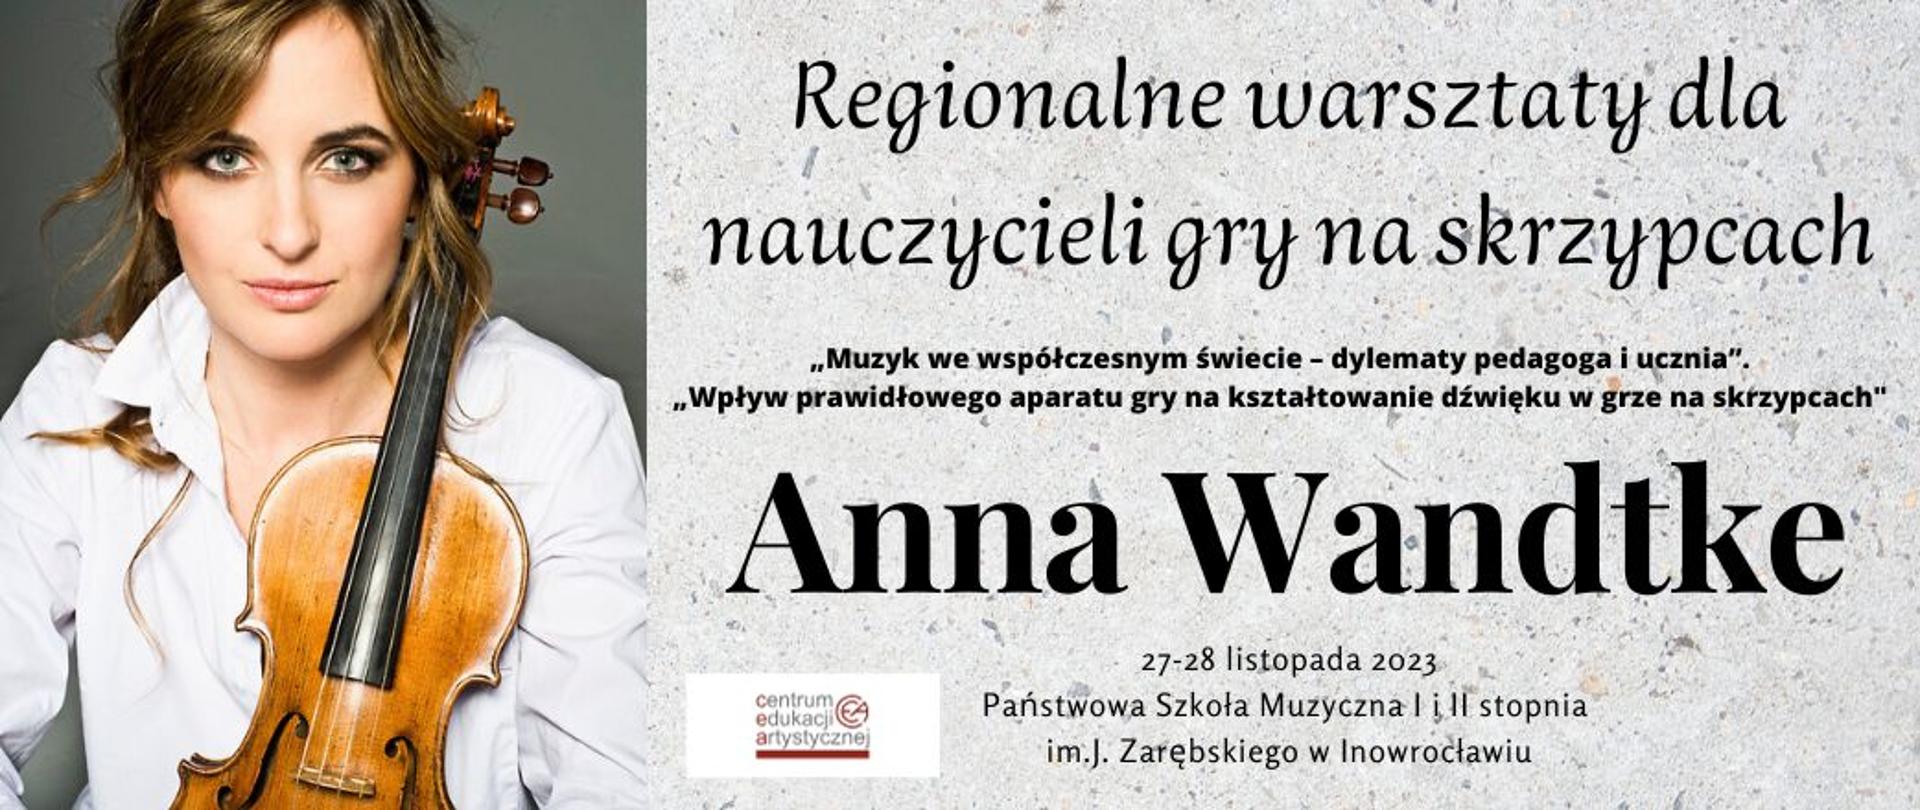 Regionalne warsztaty dla nauczycieli skrzypiec Anna Wandtke